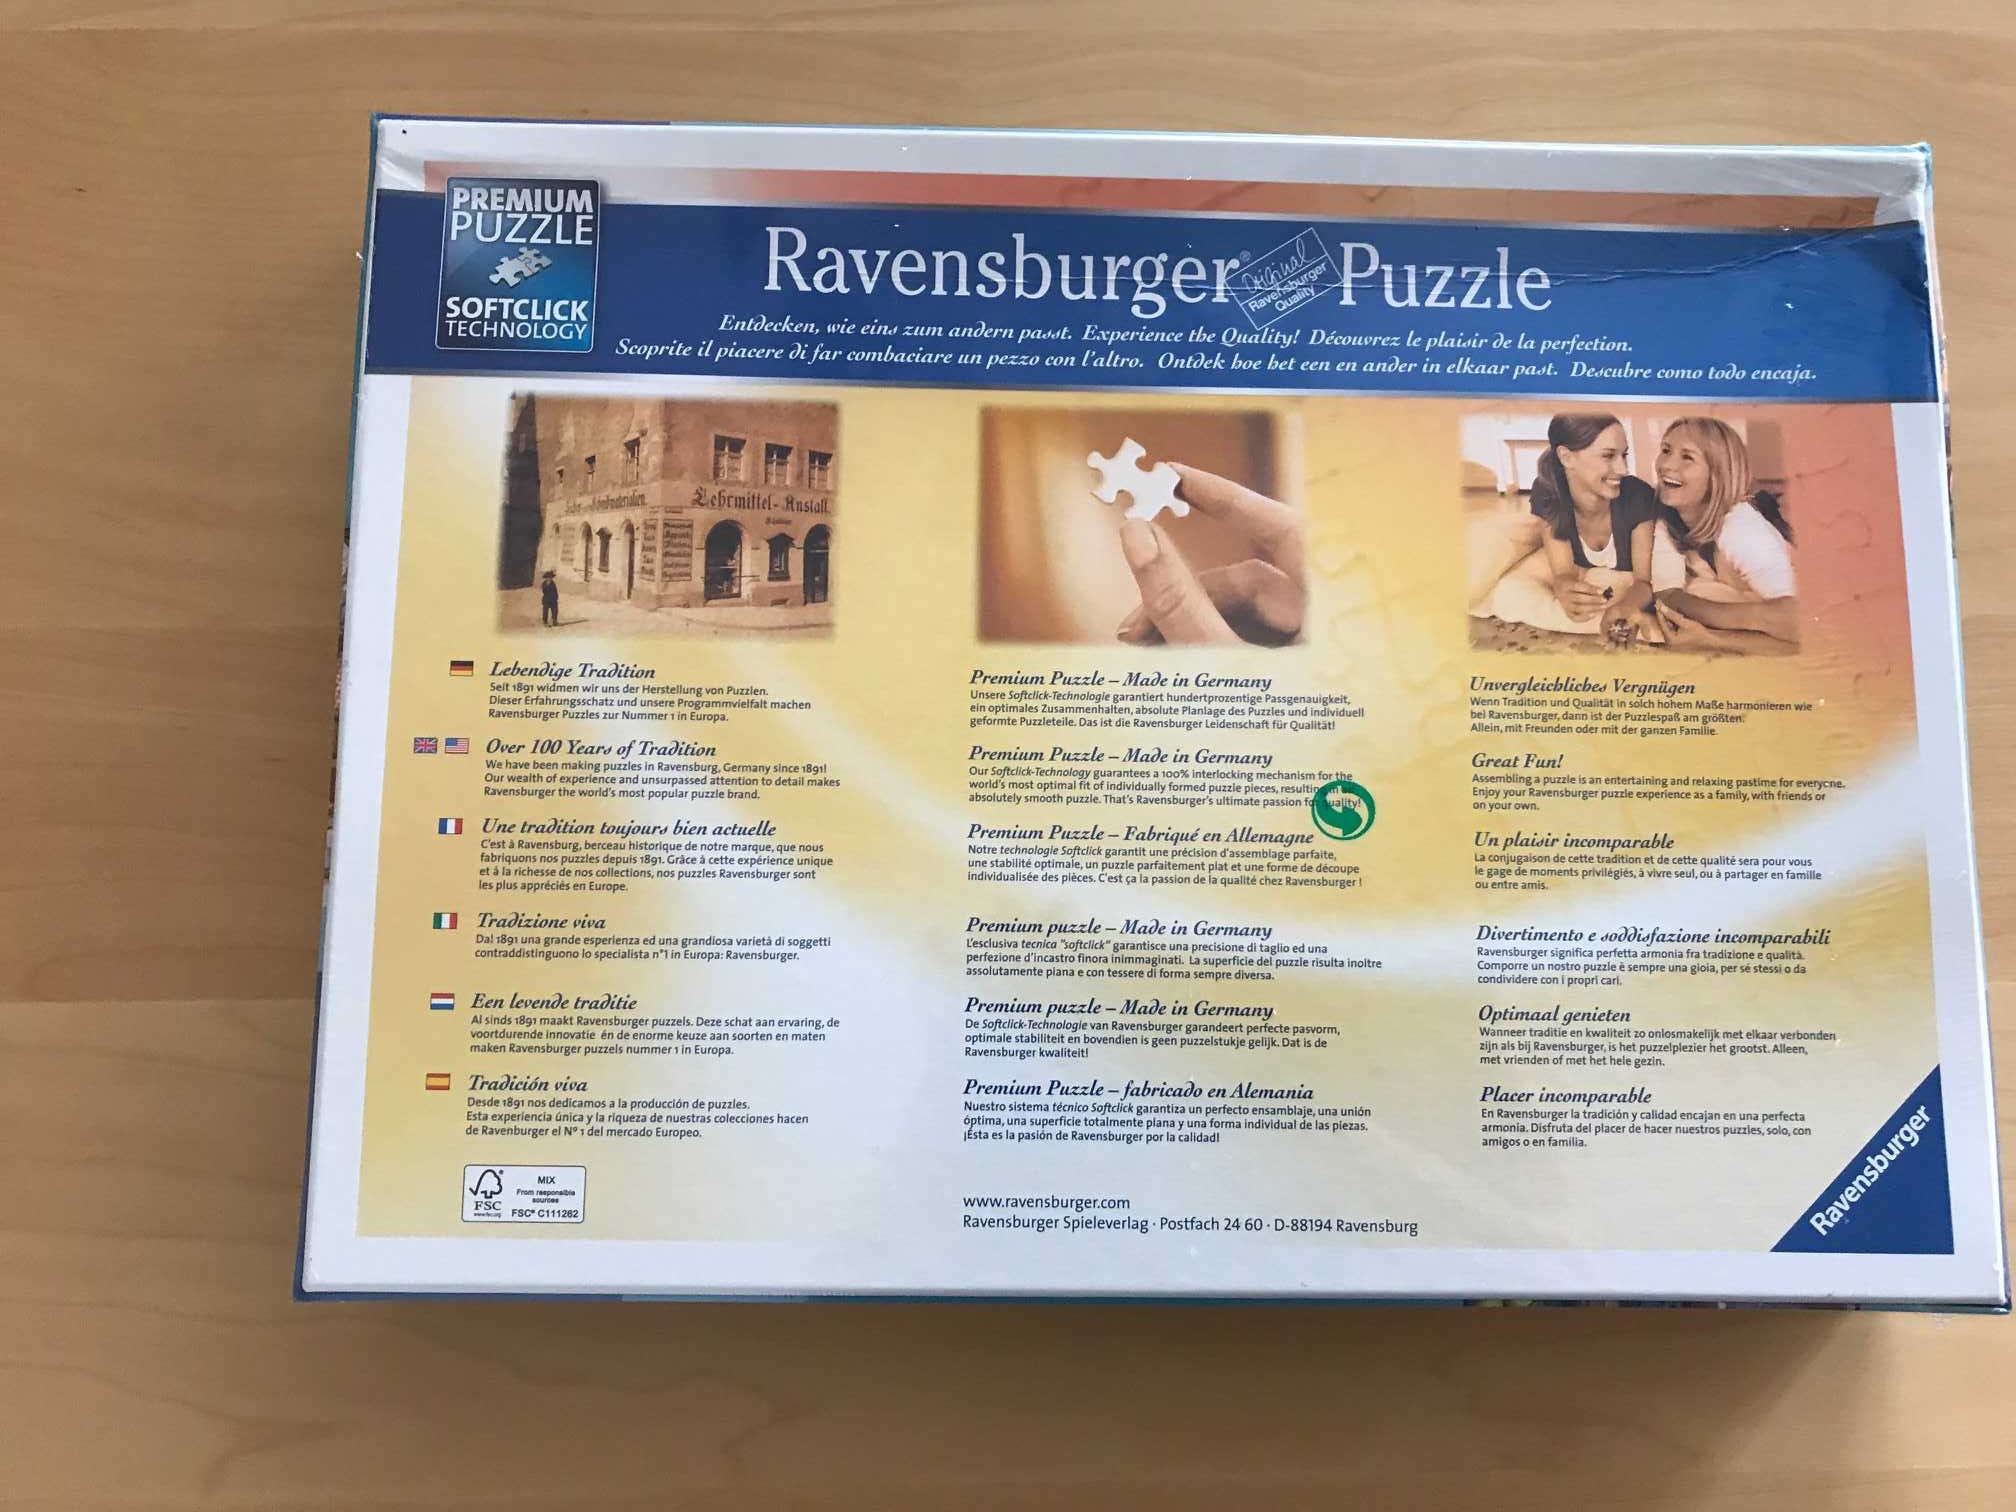 Puzzle 1000 peças Ravensburger "The Kitchen Cupboard"